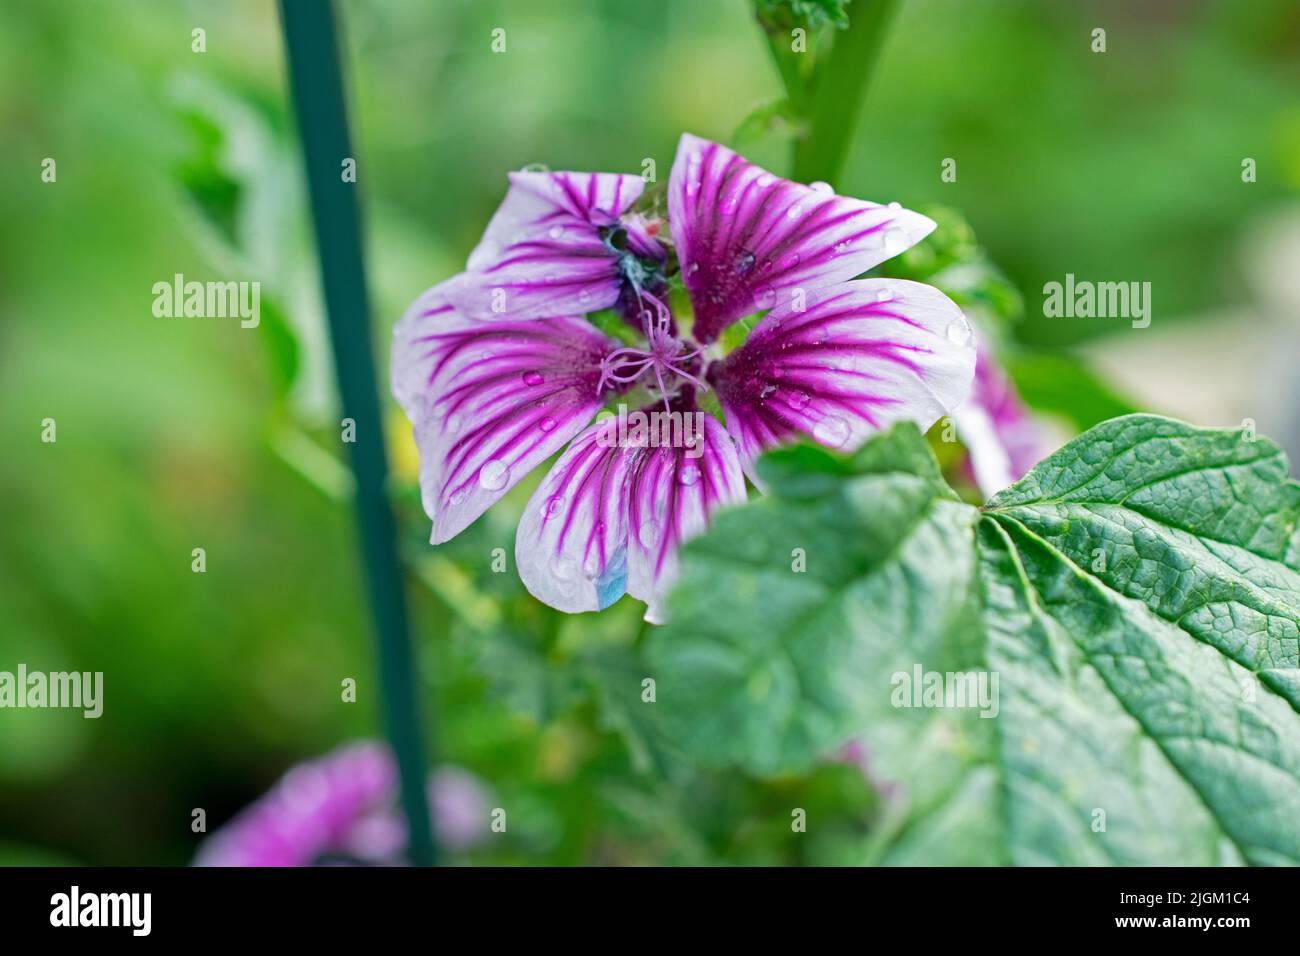 Fleur de malow de couleur violet et blanc (Malva negecta) sur fond flou de feuilles vertes -01 Banque D'Images